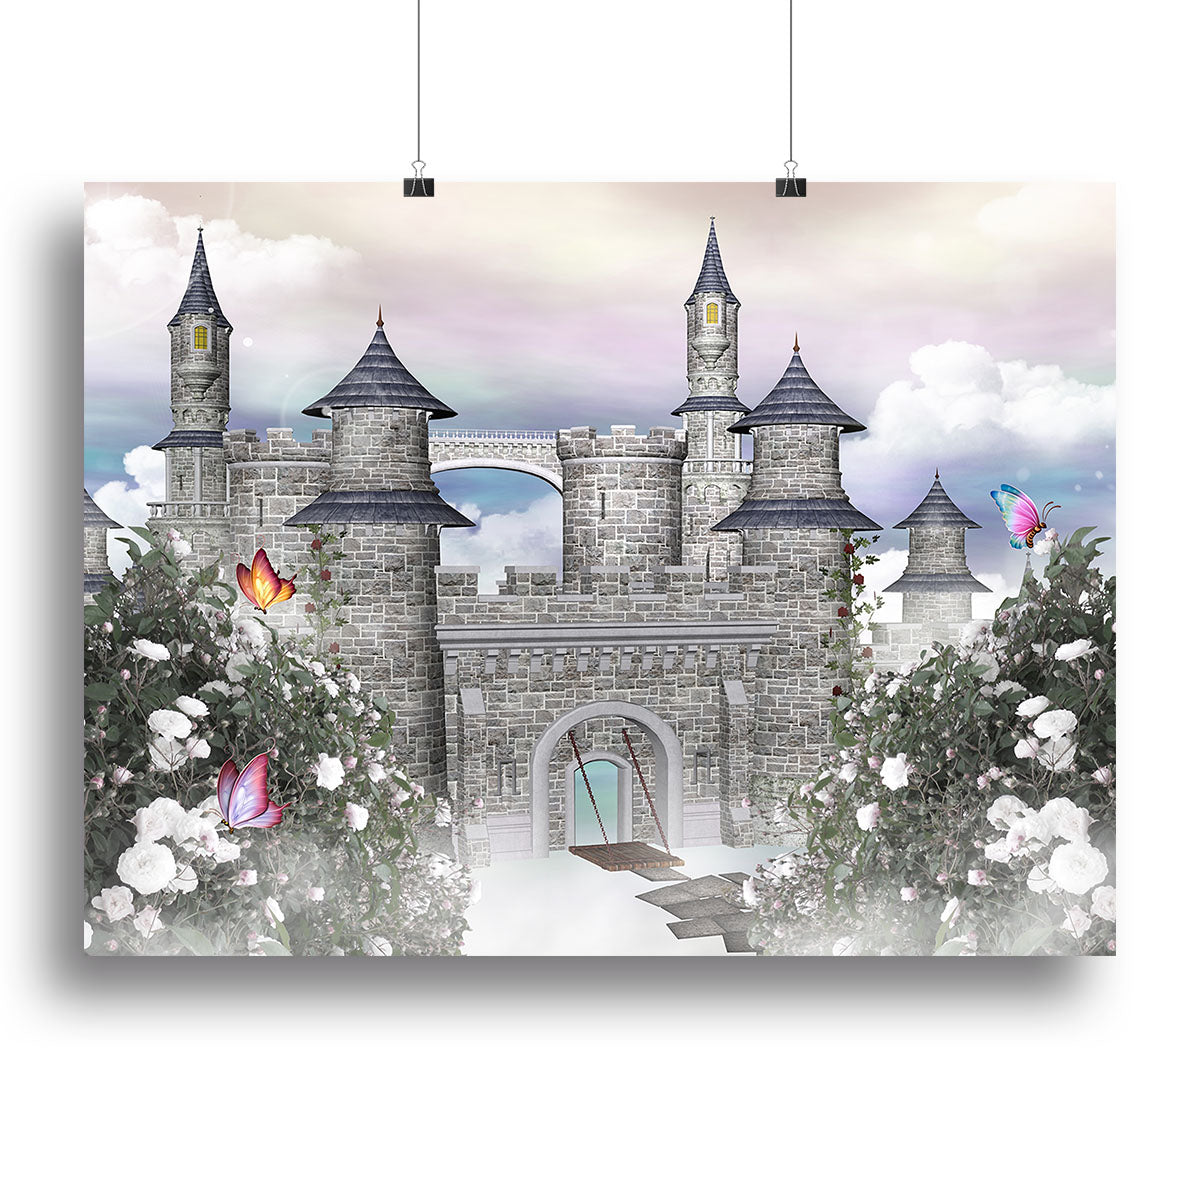 Romantic castle Canvas Print or Poster - Canvas Art Rocks - 2